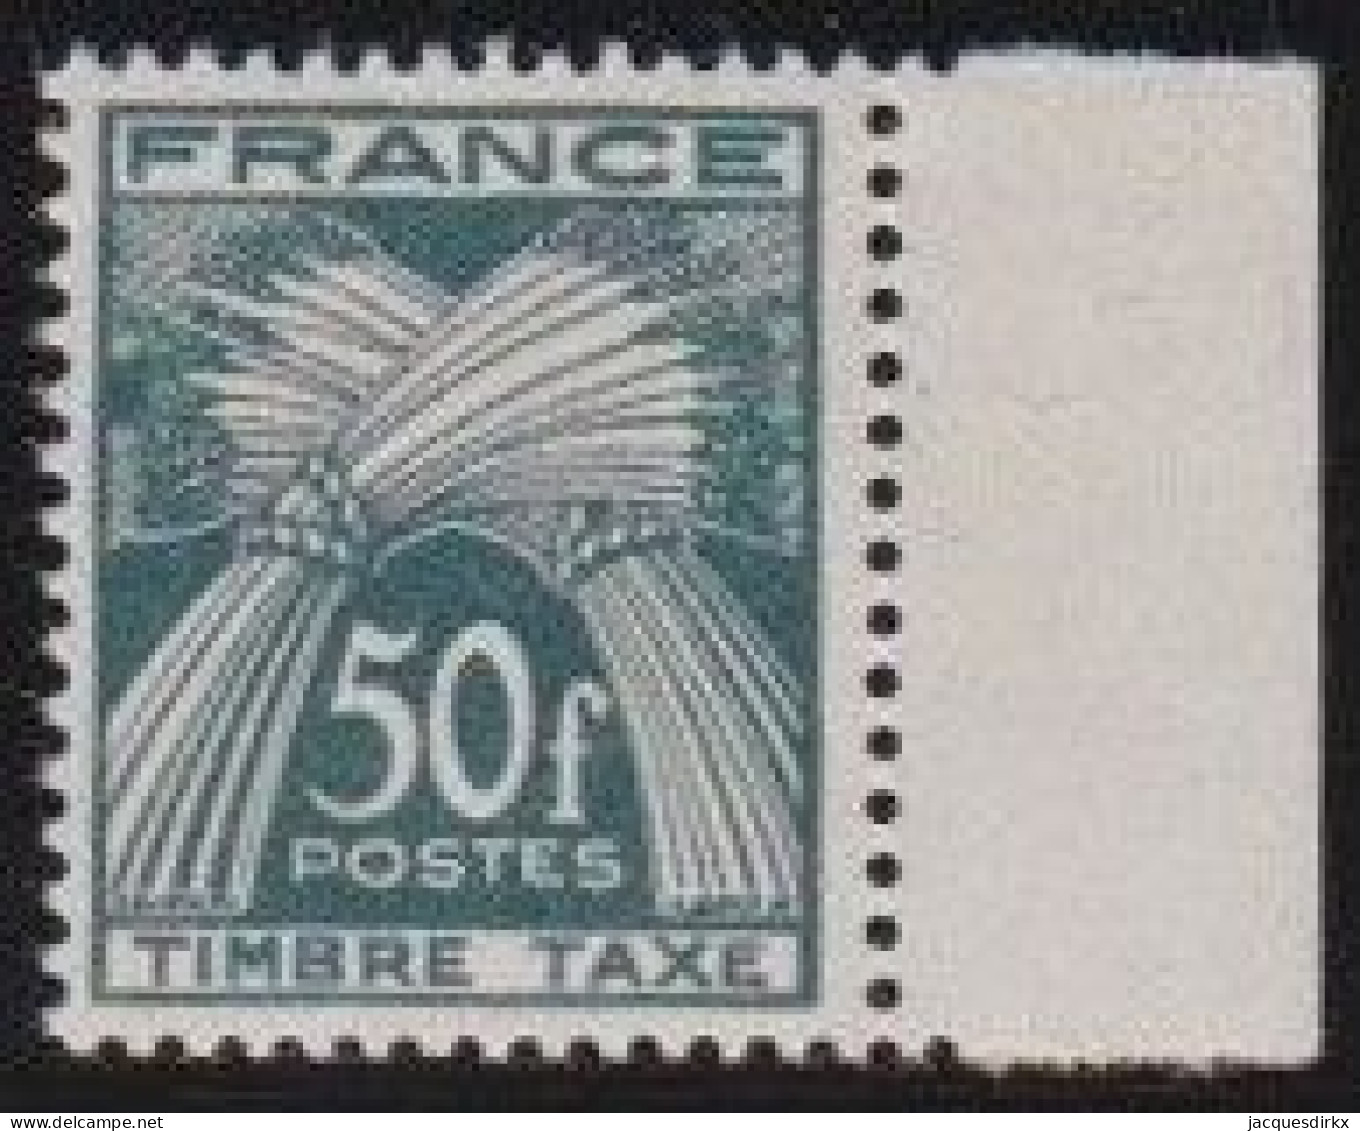 France    .  Y&T   .     Taxe  88       .   **      .    Neuf Avec Gomme Et SANS Charnière - 1859-1959 Mint/hinged